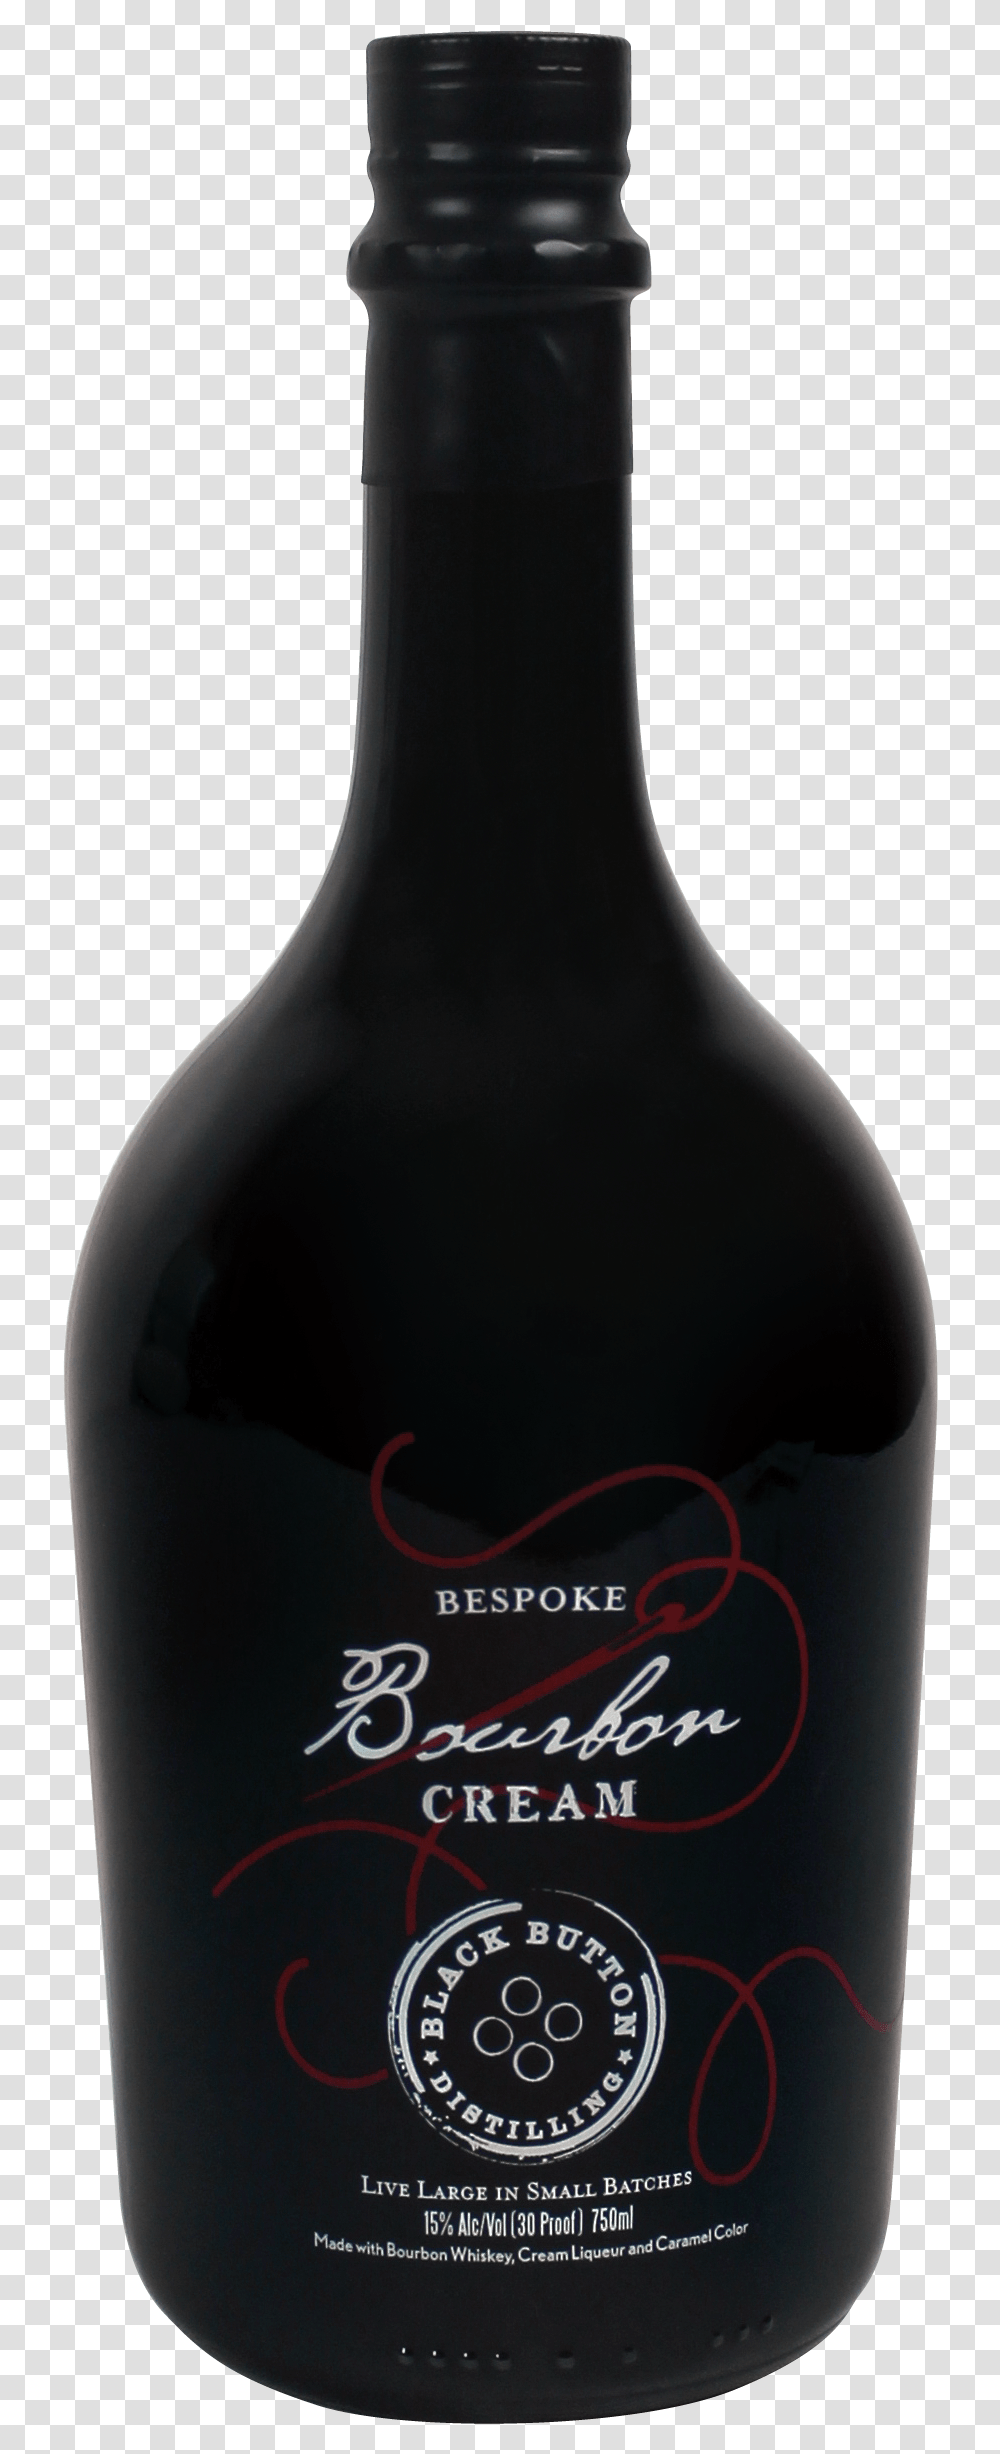 Bespoke Bourbon Cream By Black Button Distilling Cream Liqueur Black Bottle, Alcohol, Beverage, Drink, Beer Transparent Png